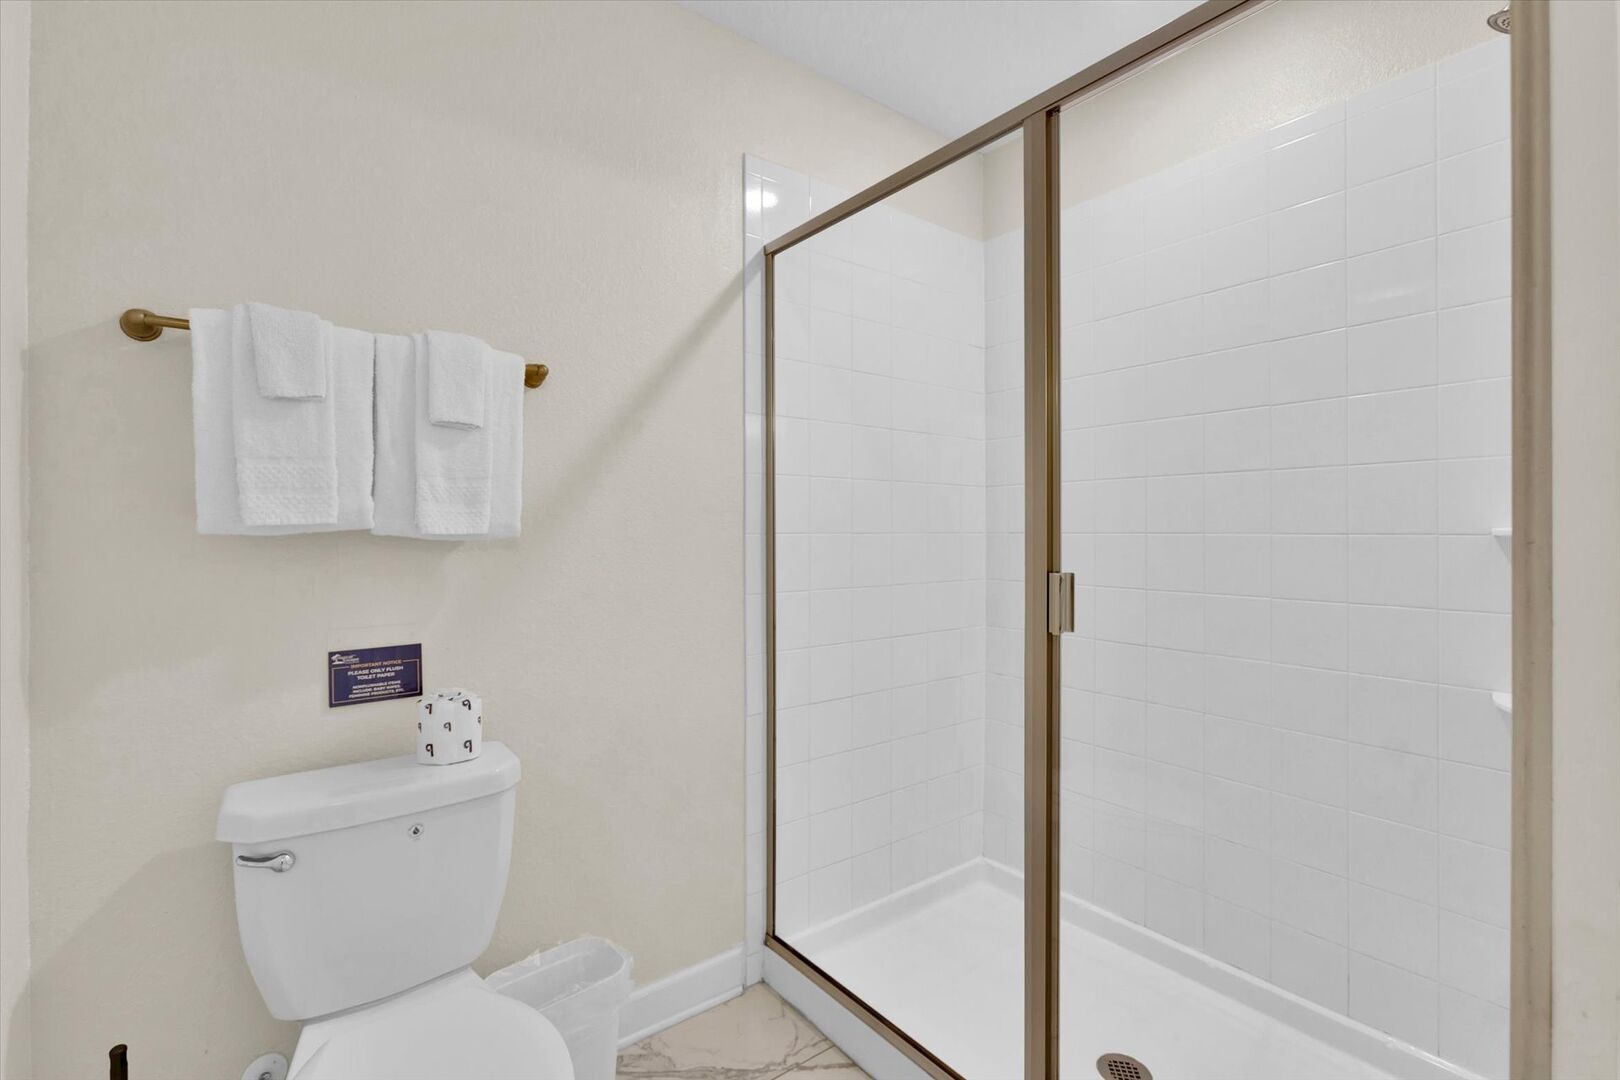 Shared Bathroom 3 (Angle)
Shower